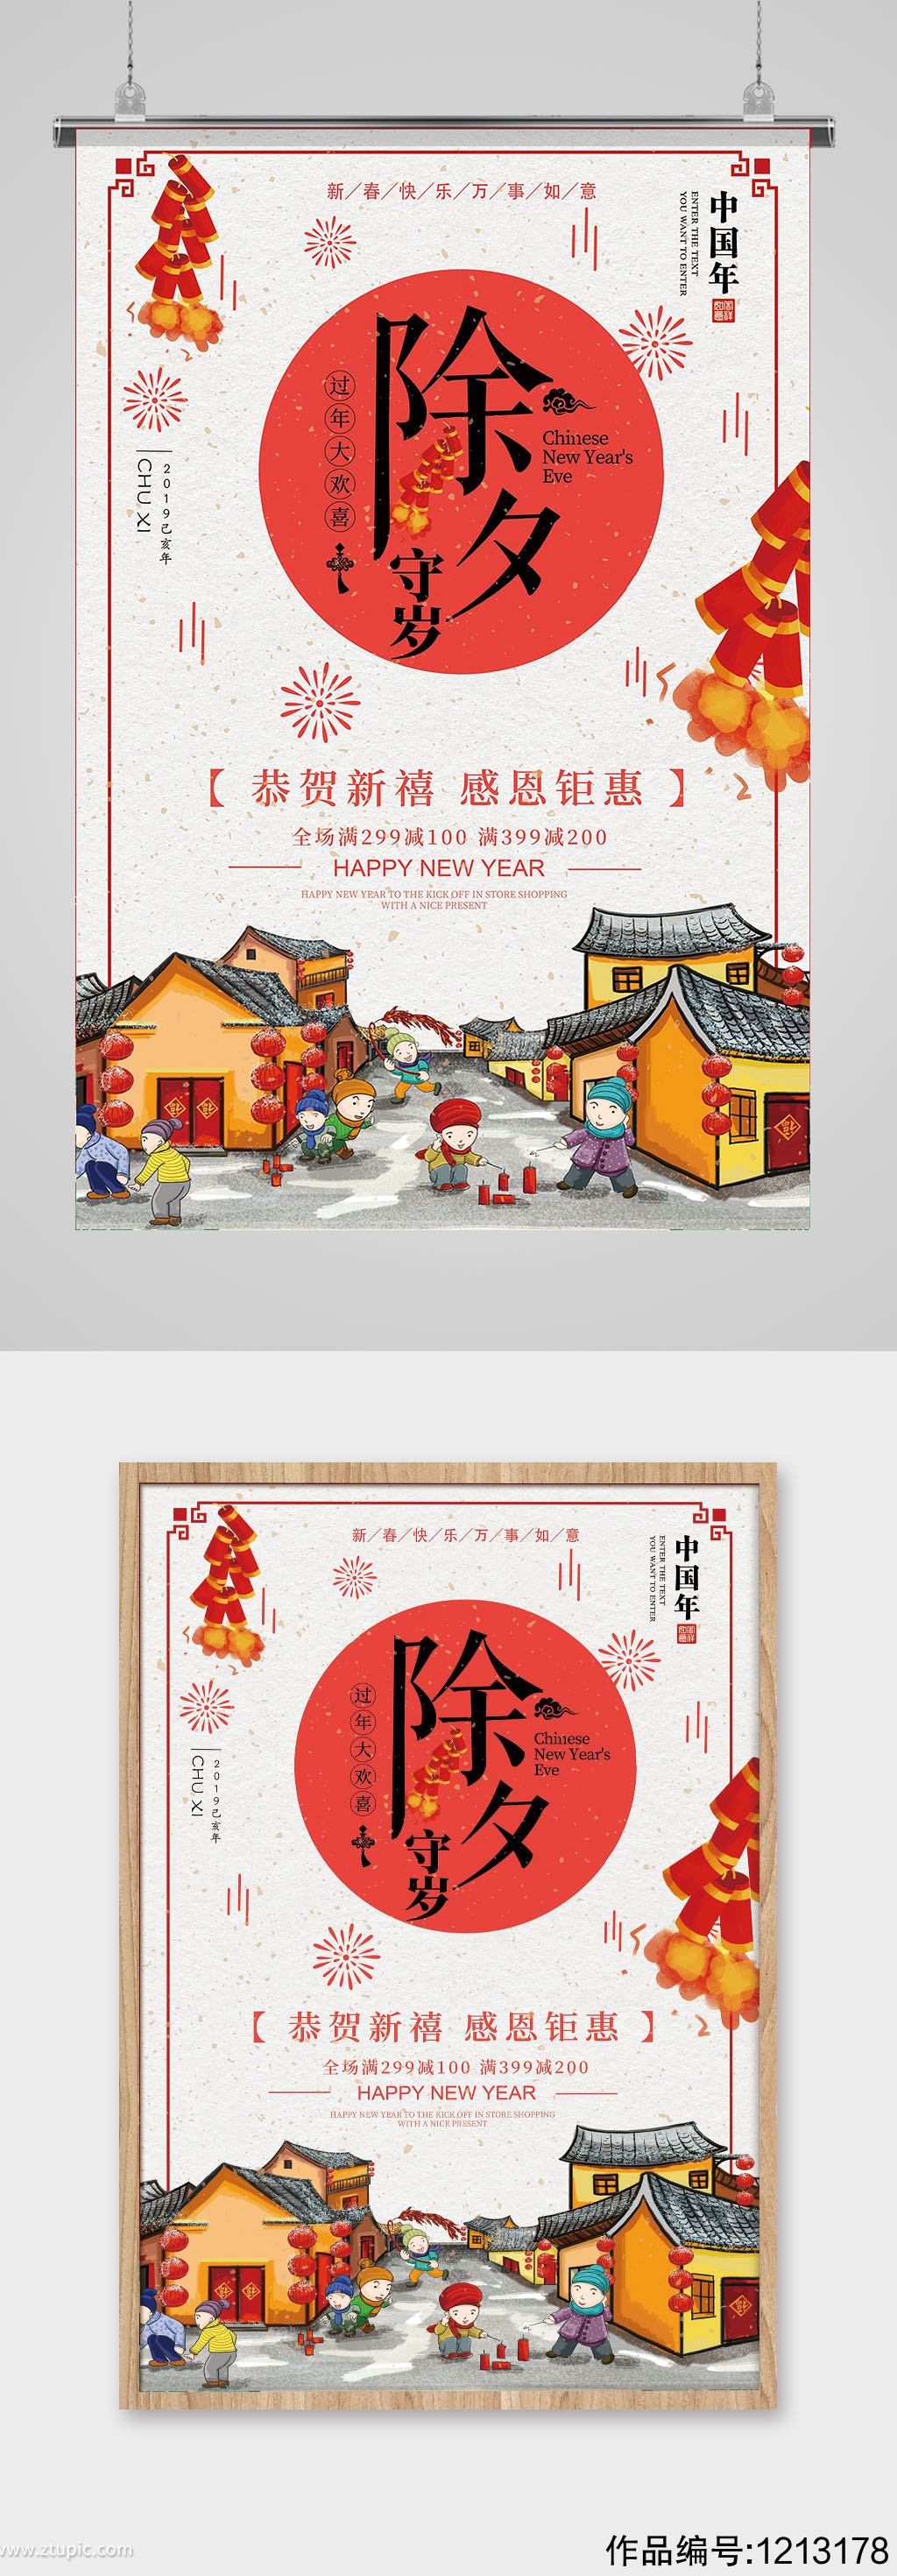 中国传统过年街道插画除夕节日海报